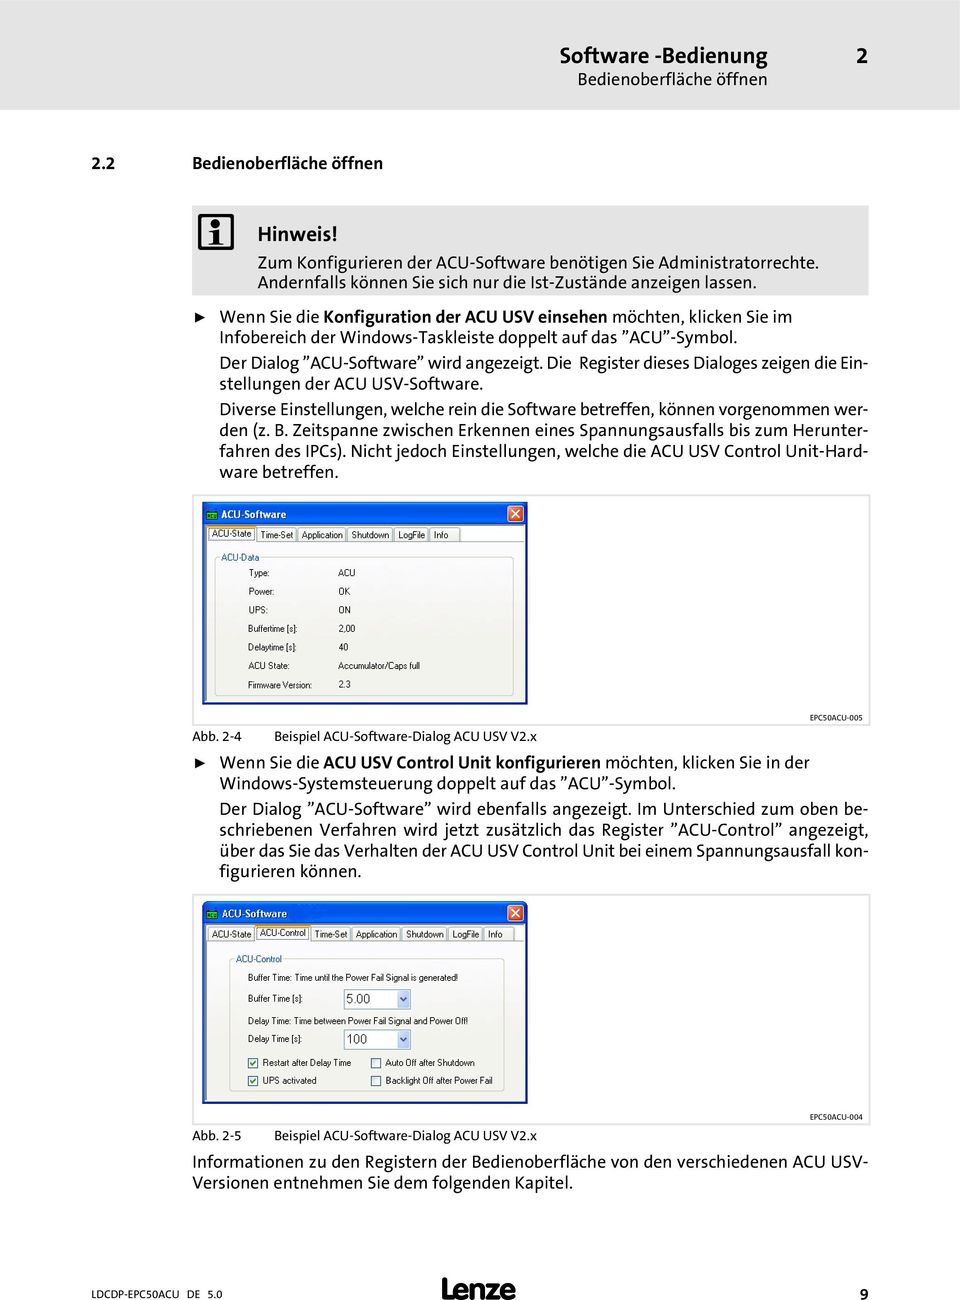 ƒ Wenn Sie die Konfiguration der ACU USV einsehen möchten, klicken Sie im Infobereich der Windows Taskleiste doppelt auf das "ACU" Symbol. Der Dialog "ACU Software" wird angezeigt.